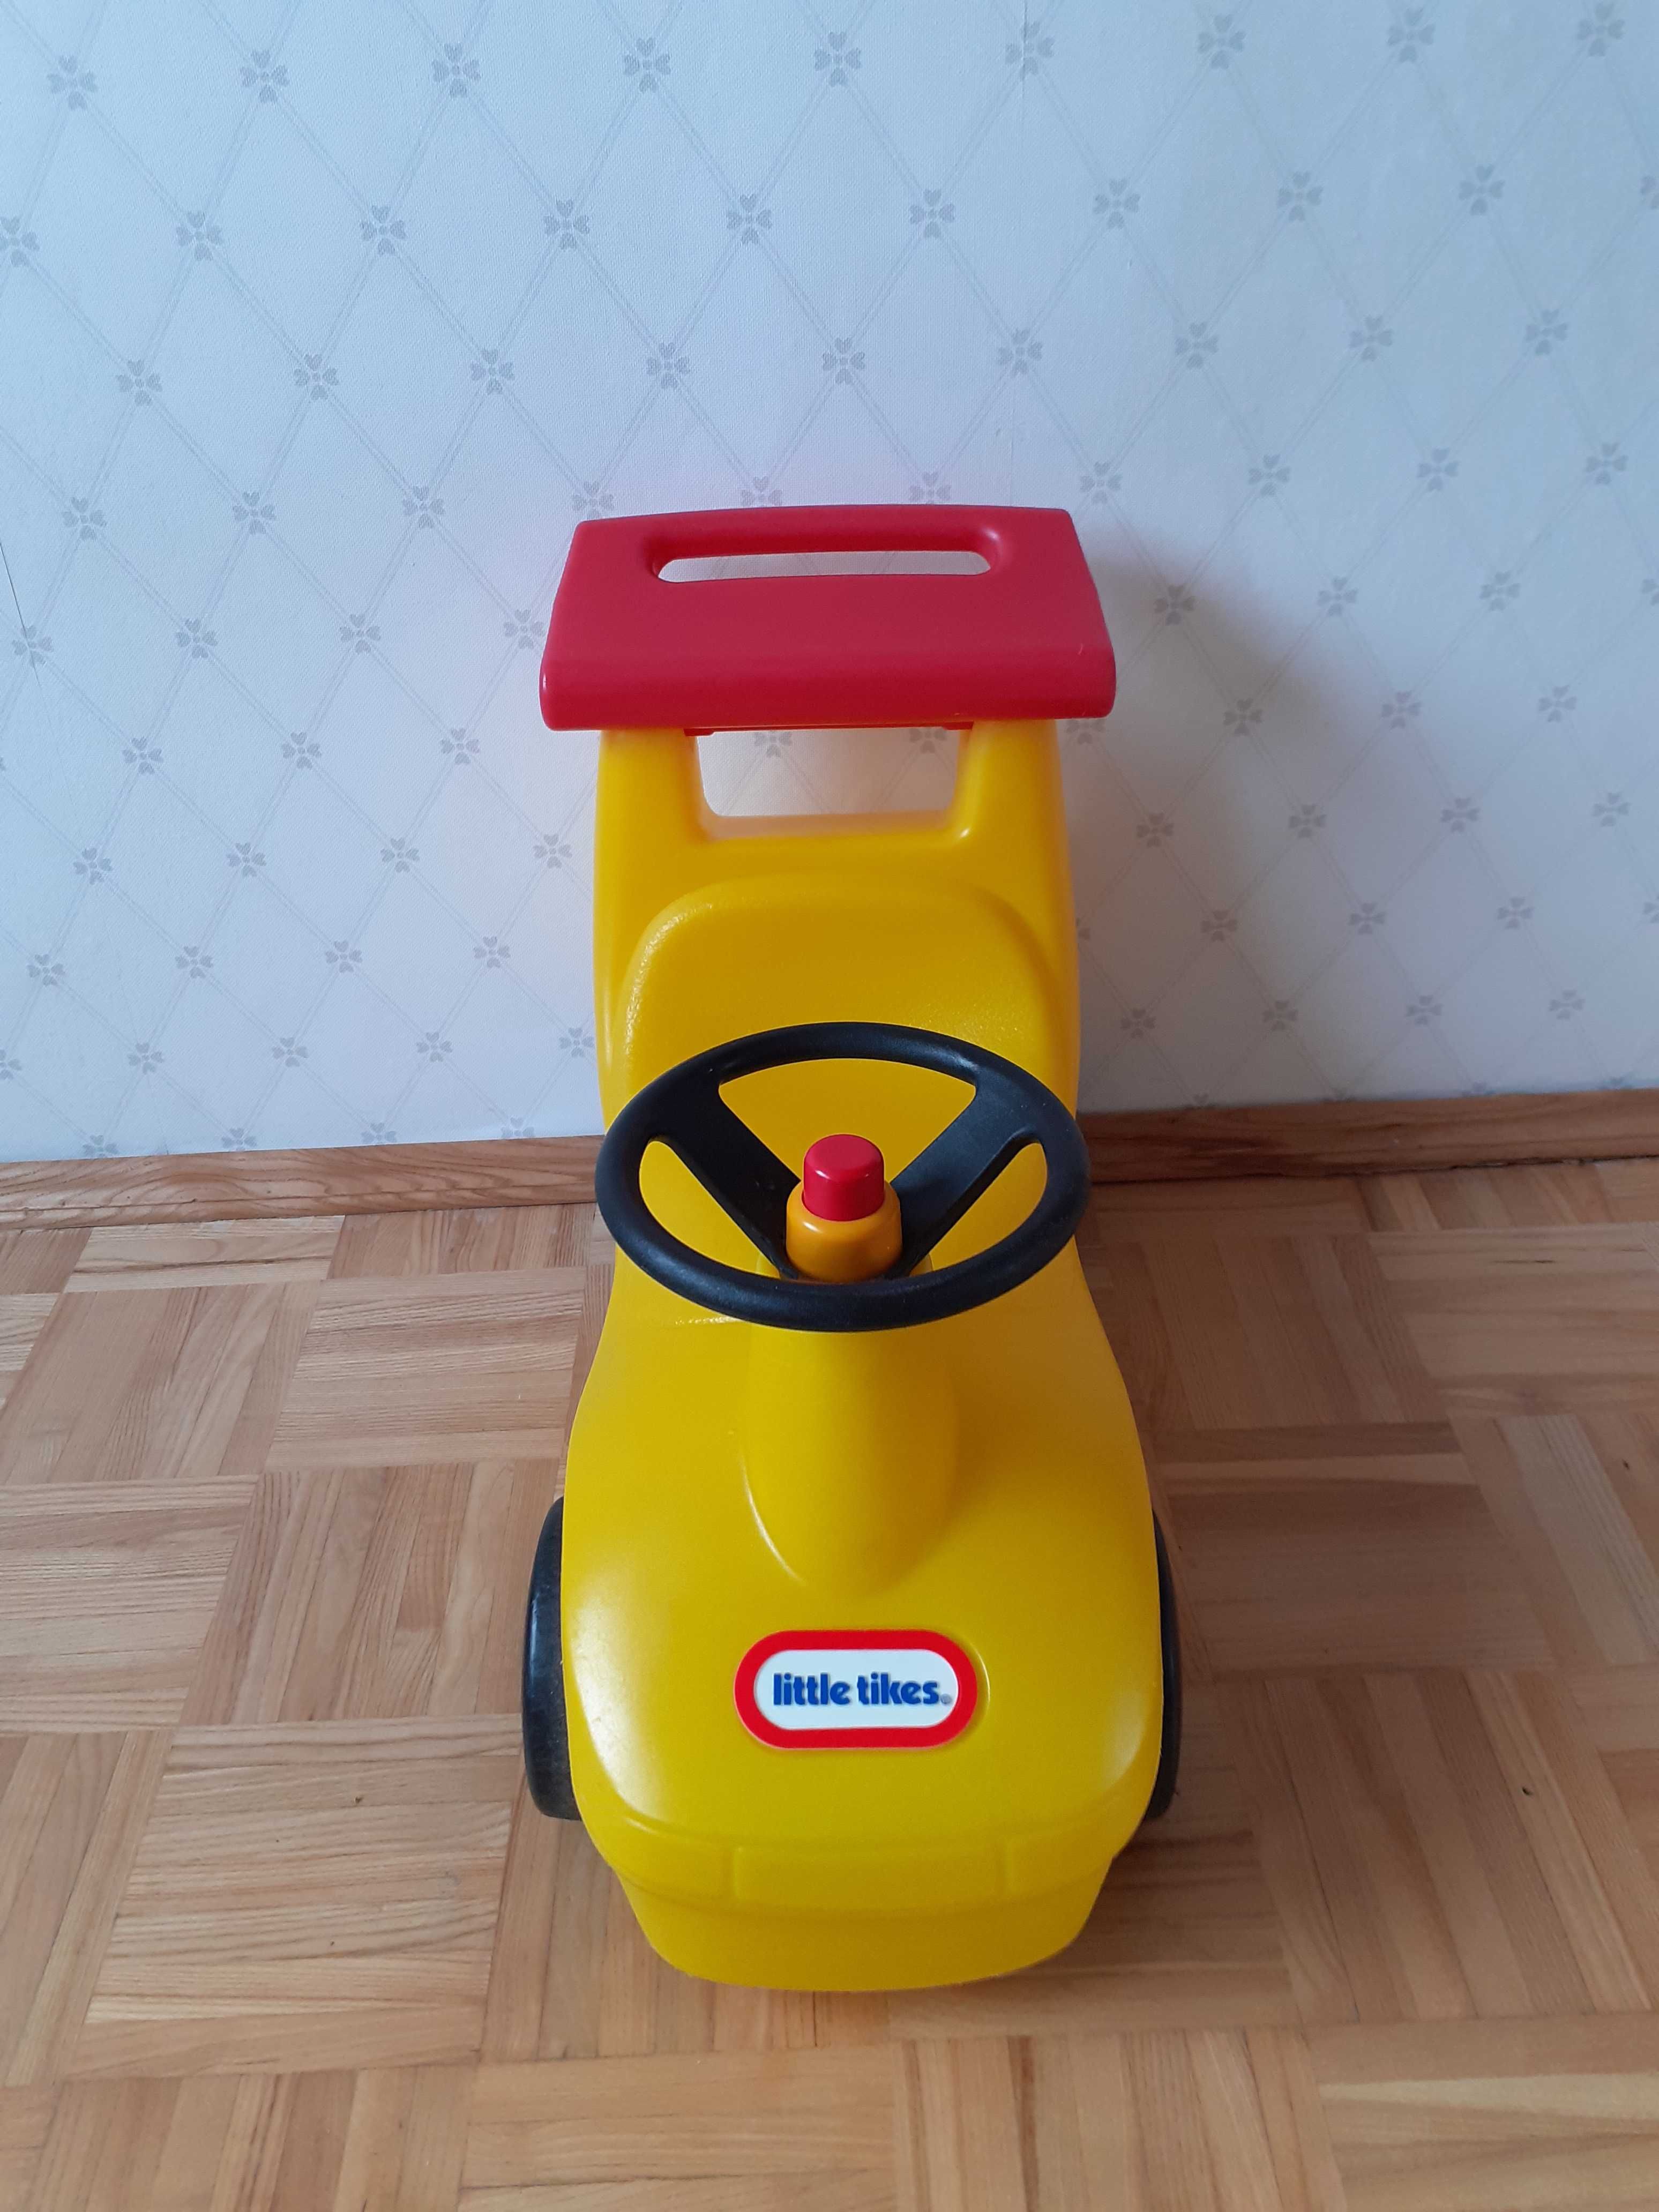 Little Tikes Samochód Chodzik Żółty 17231 -jeździk, pchacz